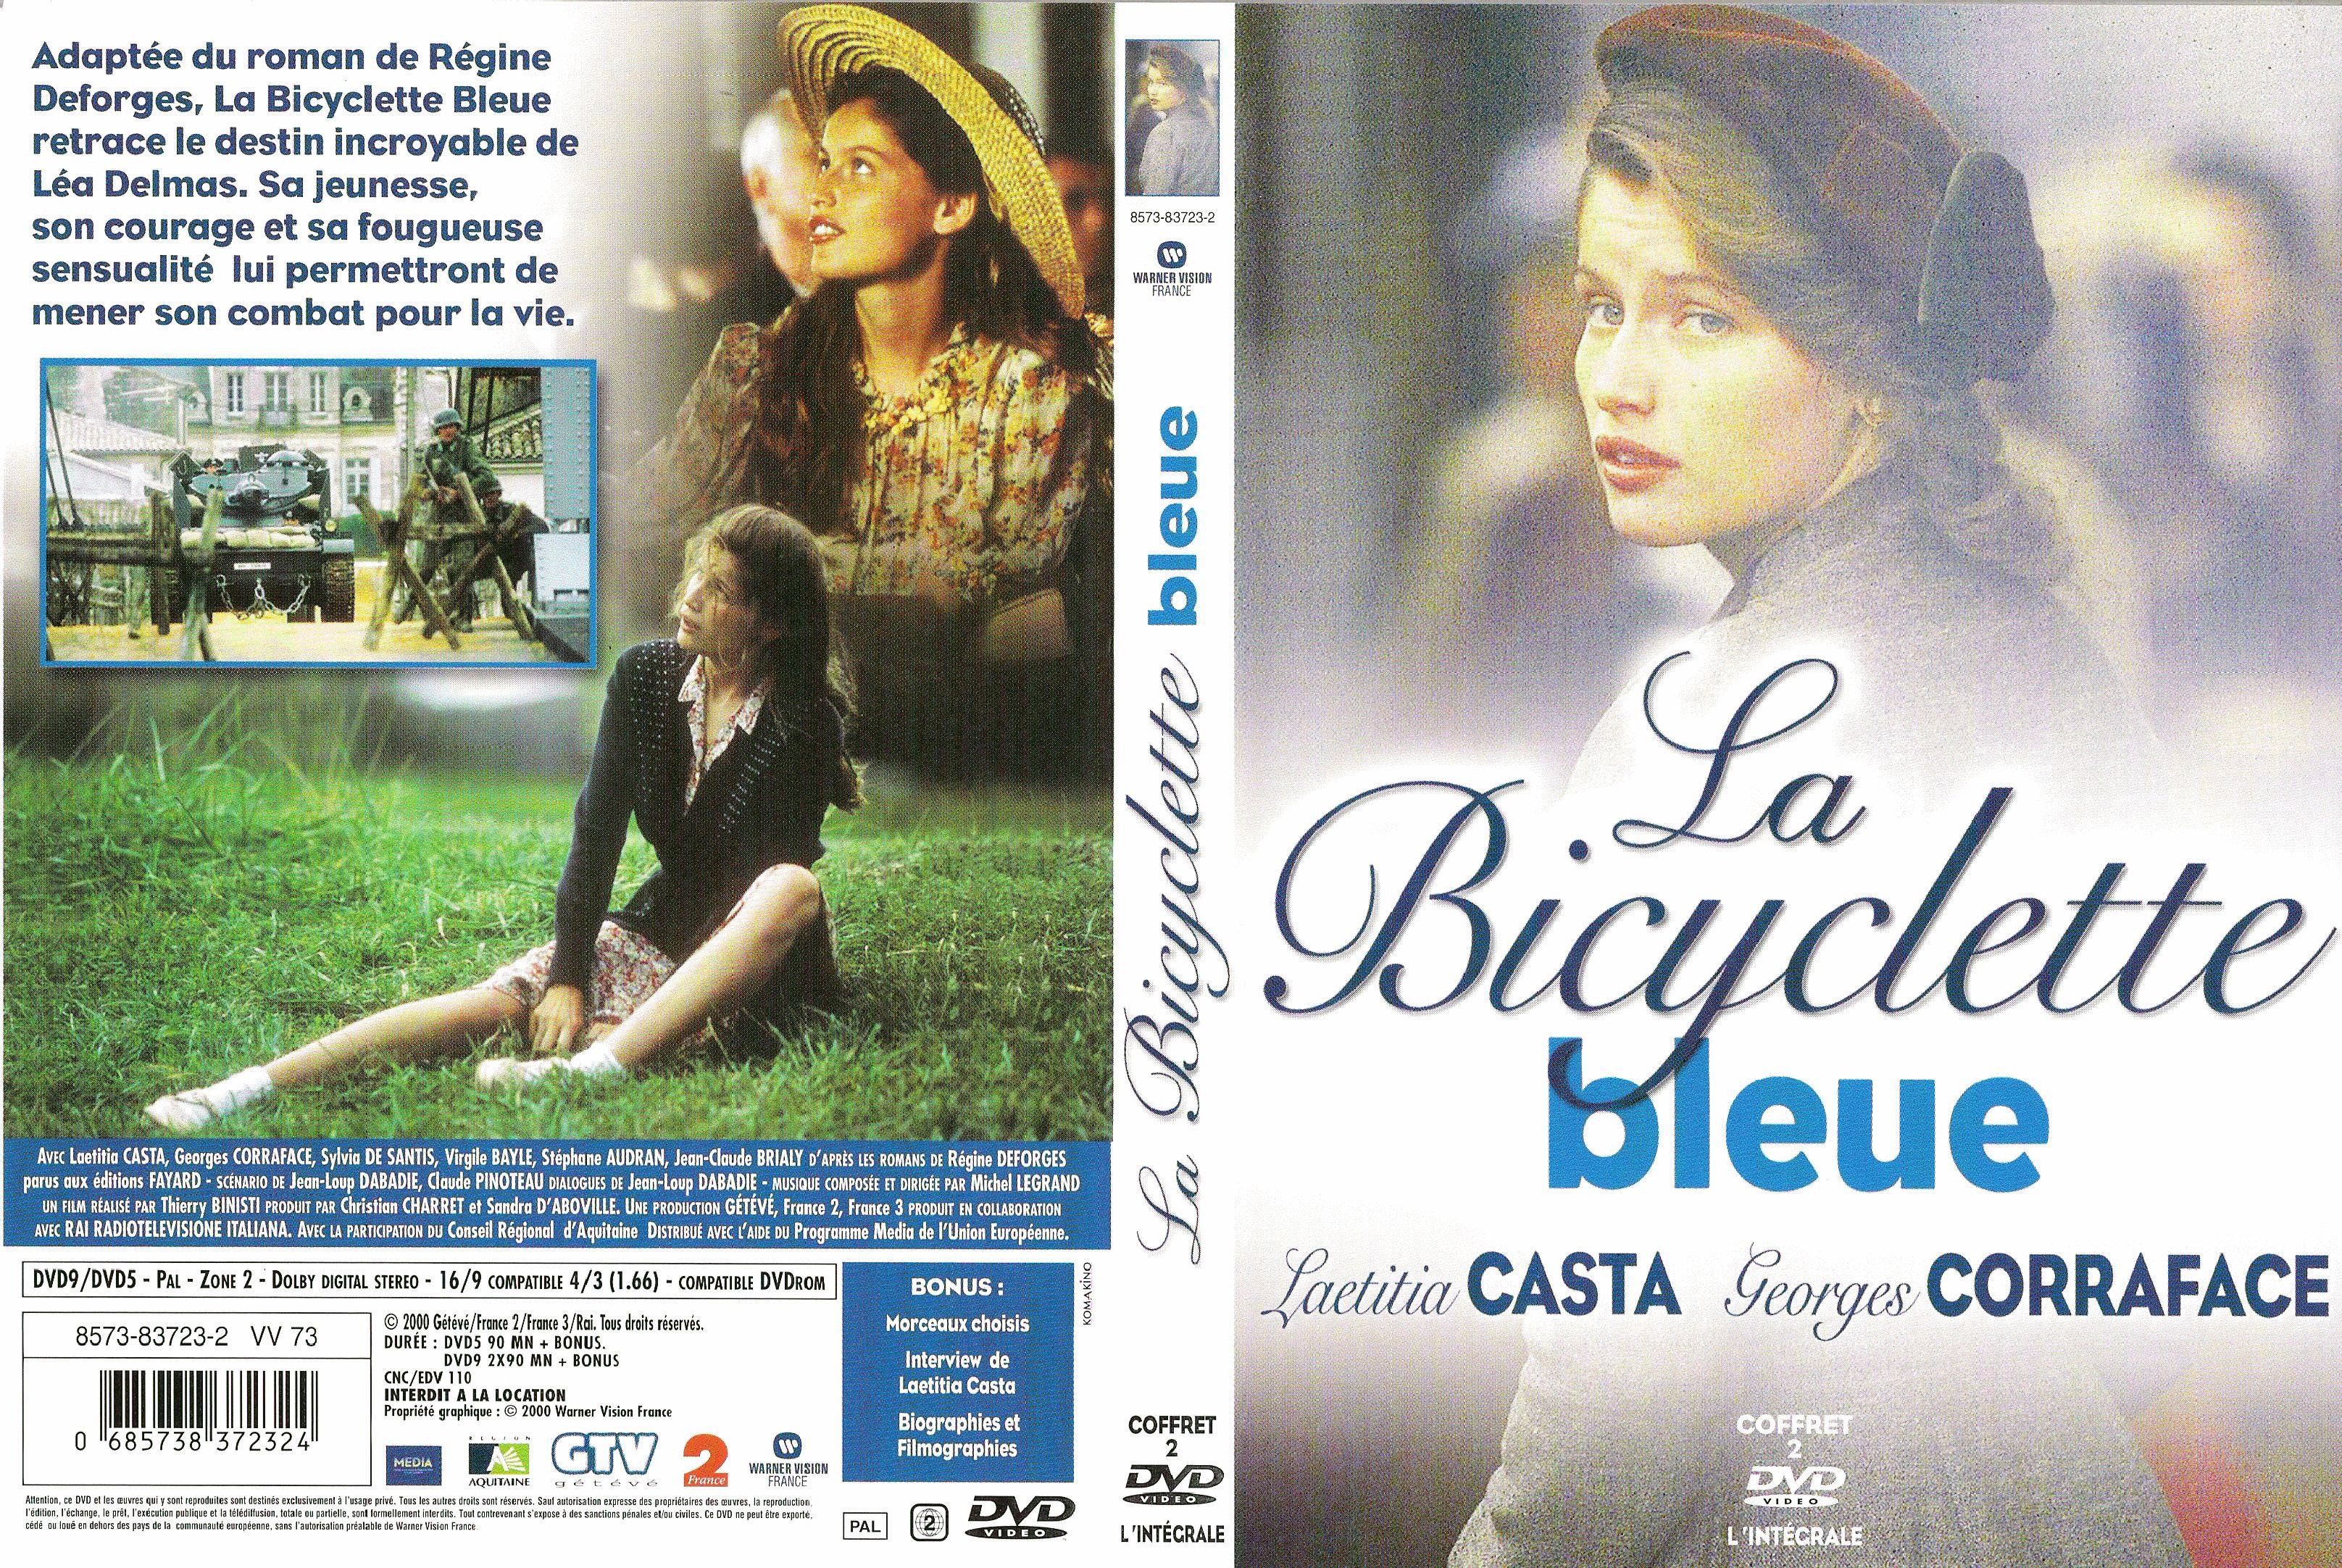 Jaquette DVD La bicyclette bleue